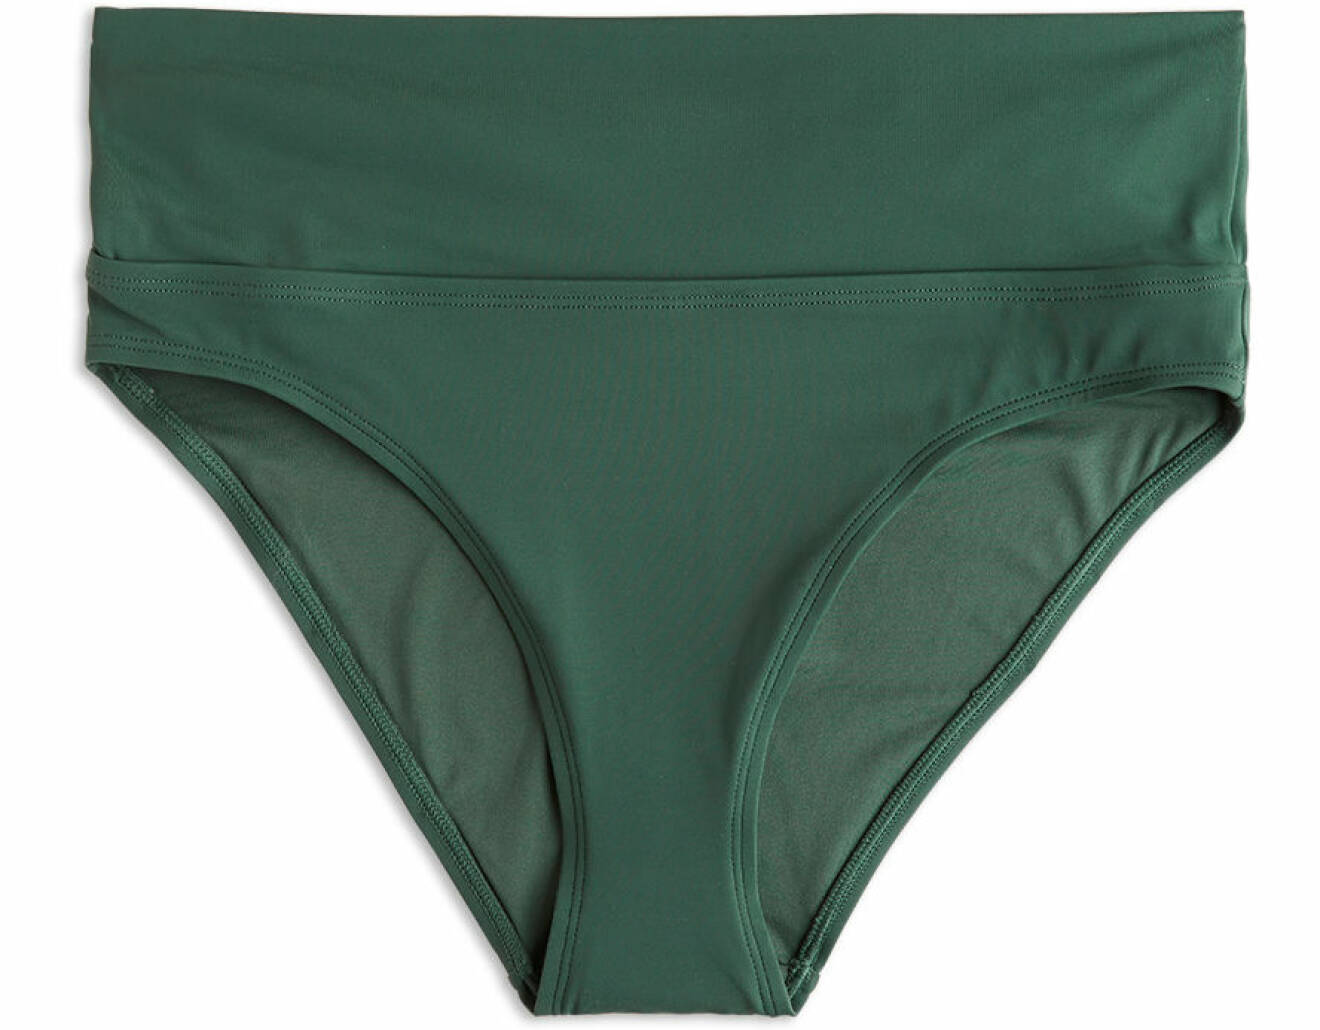 Grön bikiniunderdel med hög midja från Lindex.